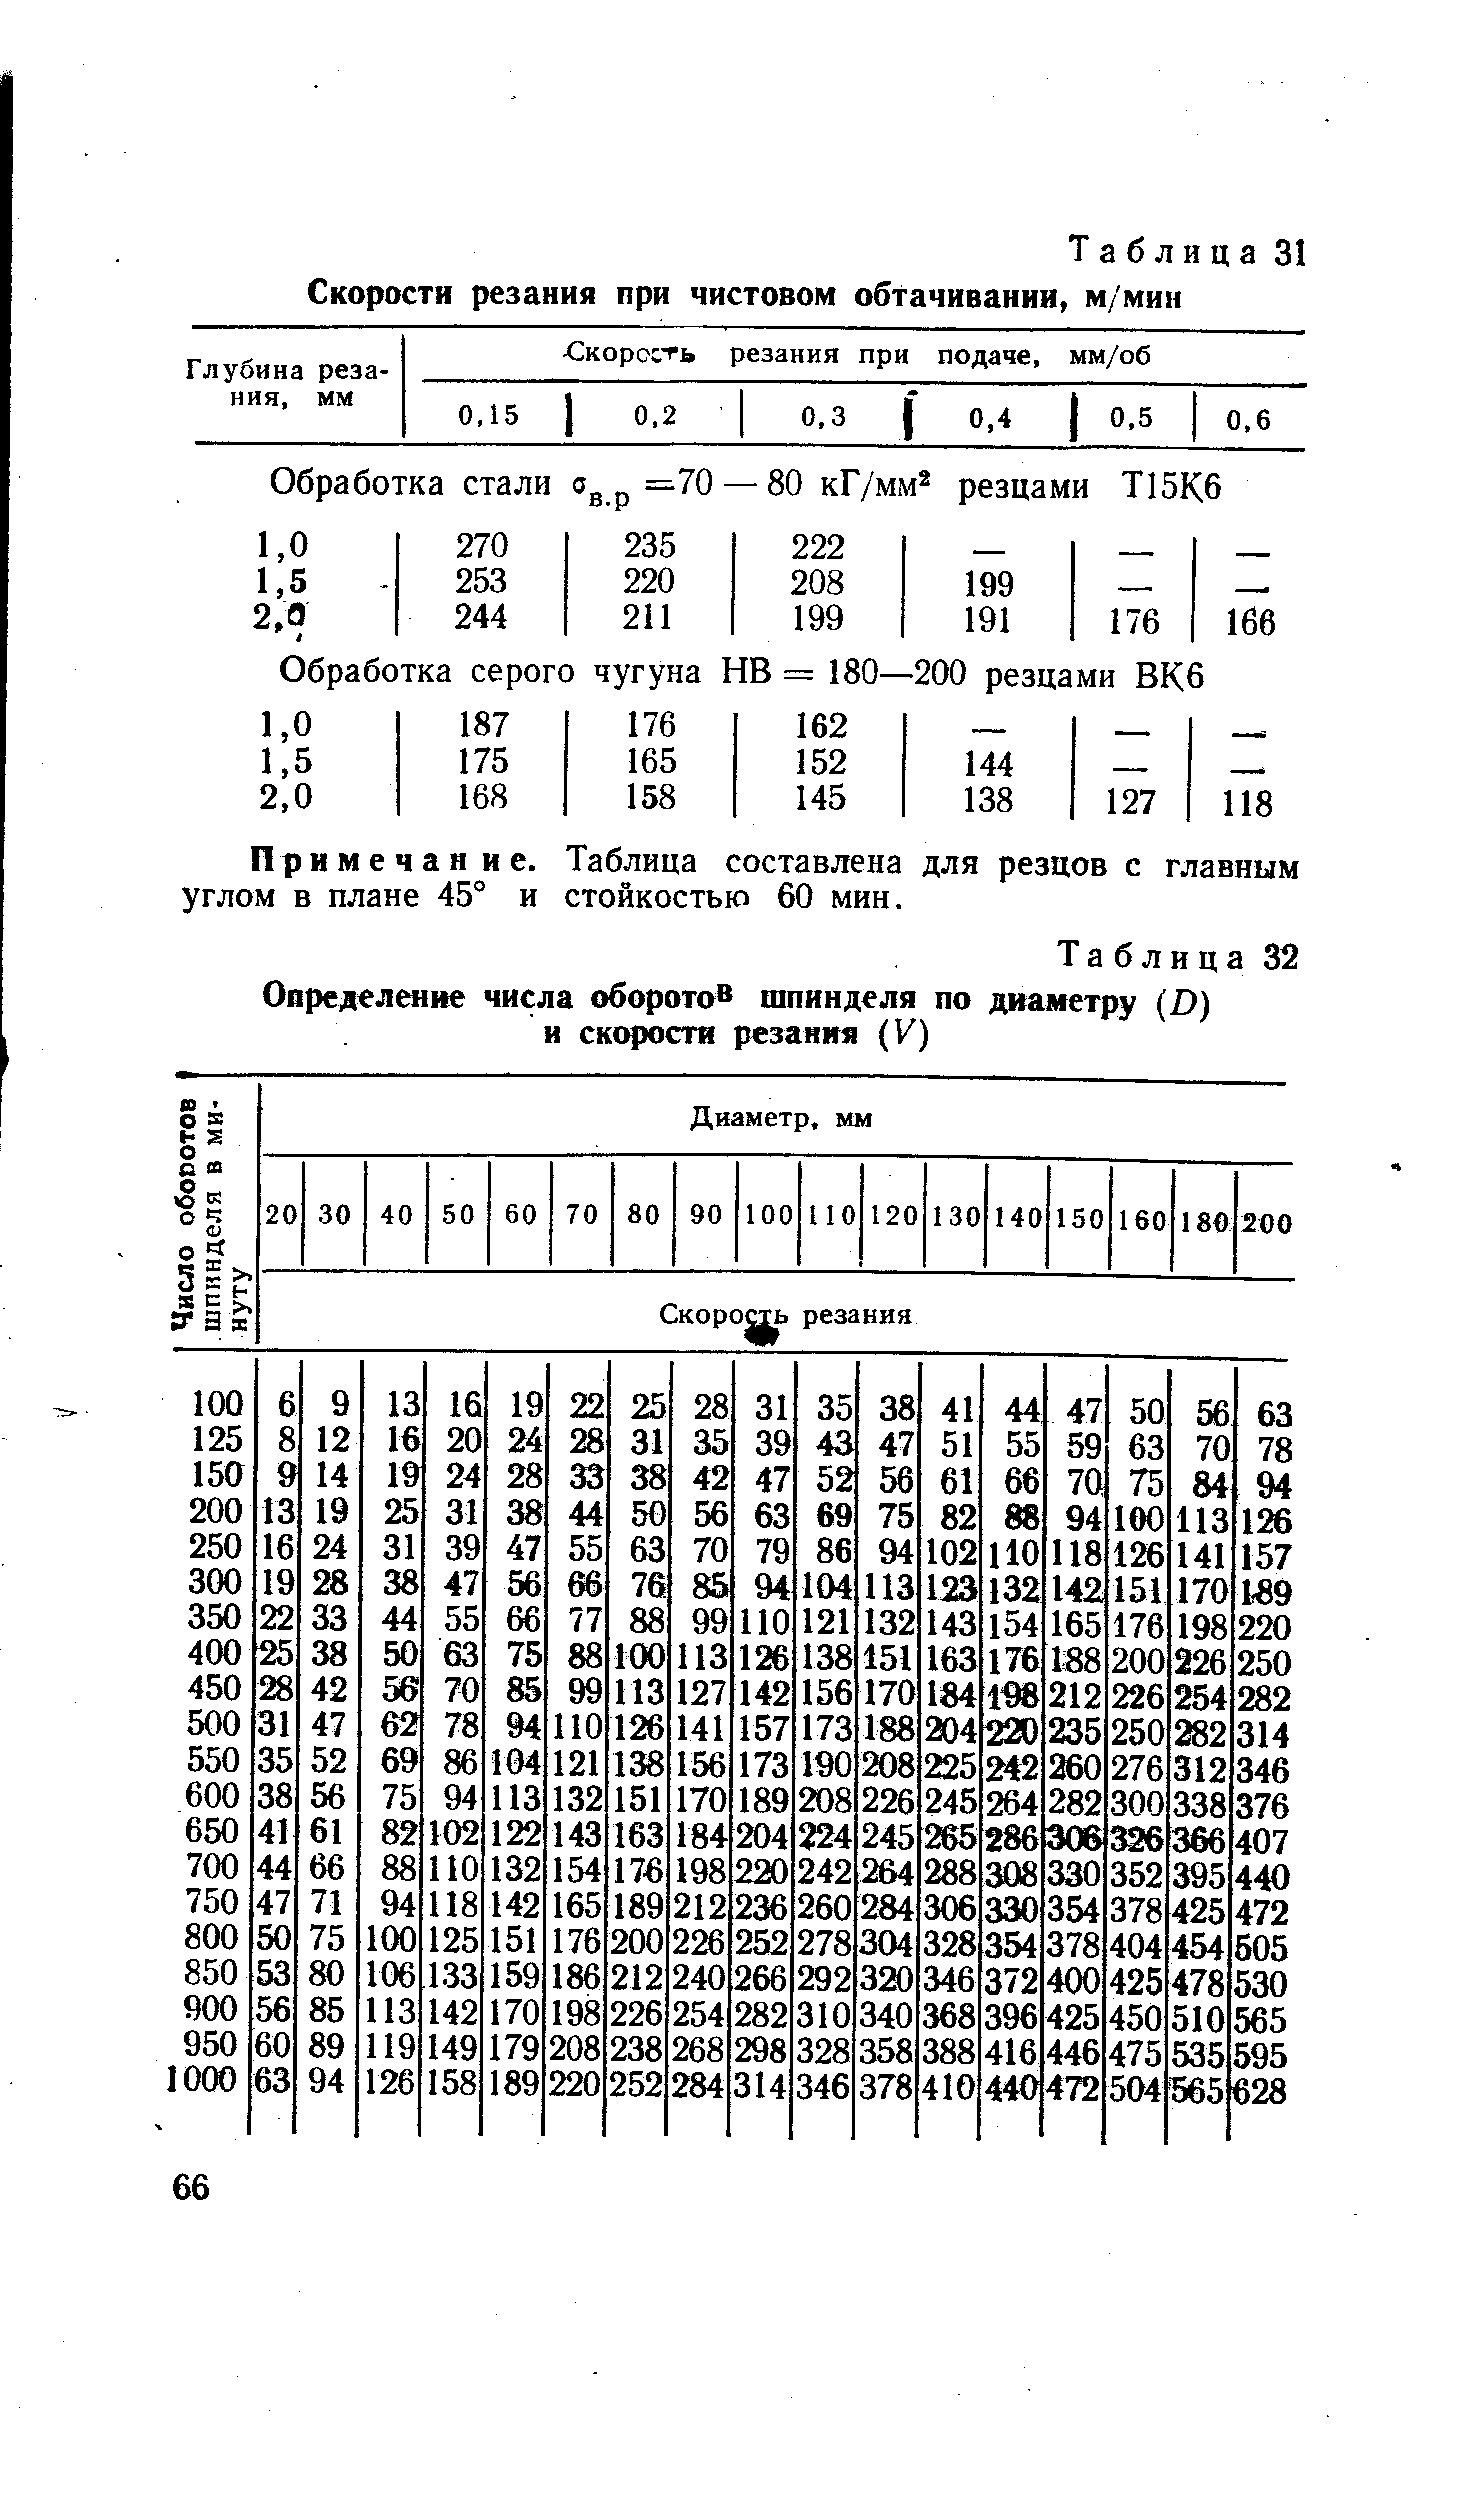 Таблица 32 Определенне числа оборотов шпинделя по диаметру (D) и скорости резания (К)
